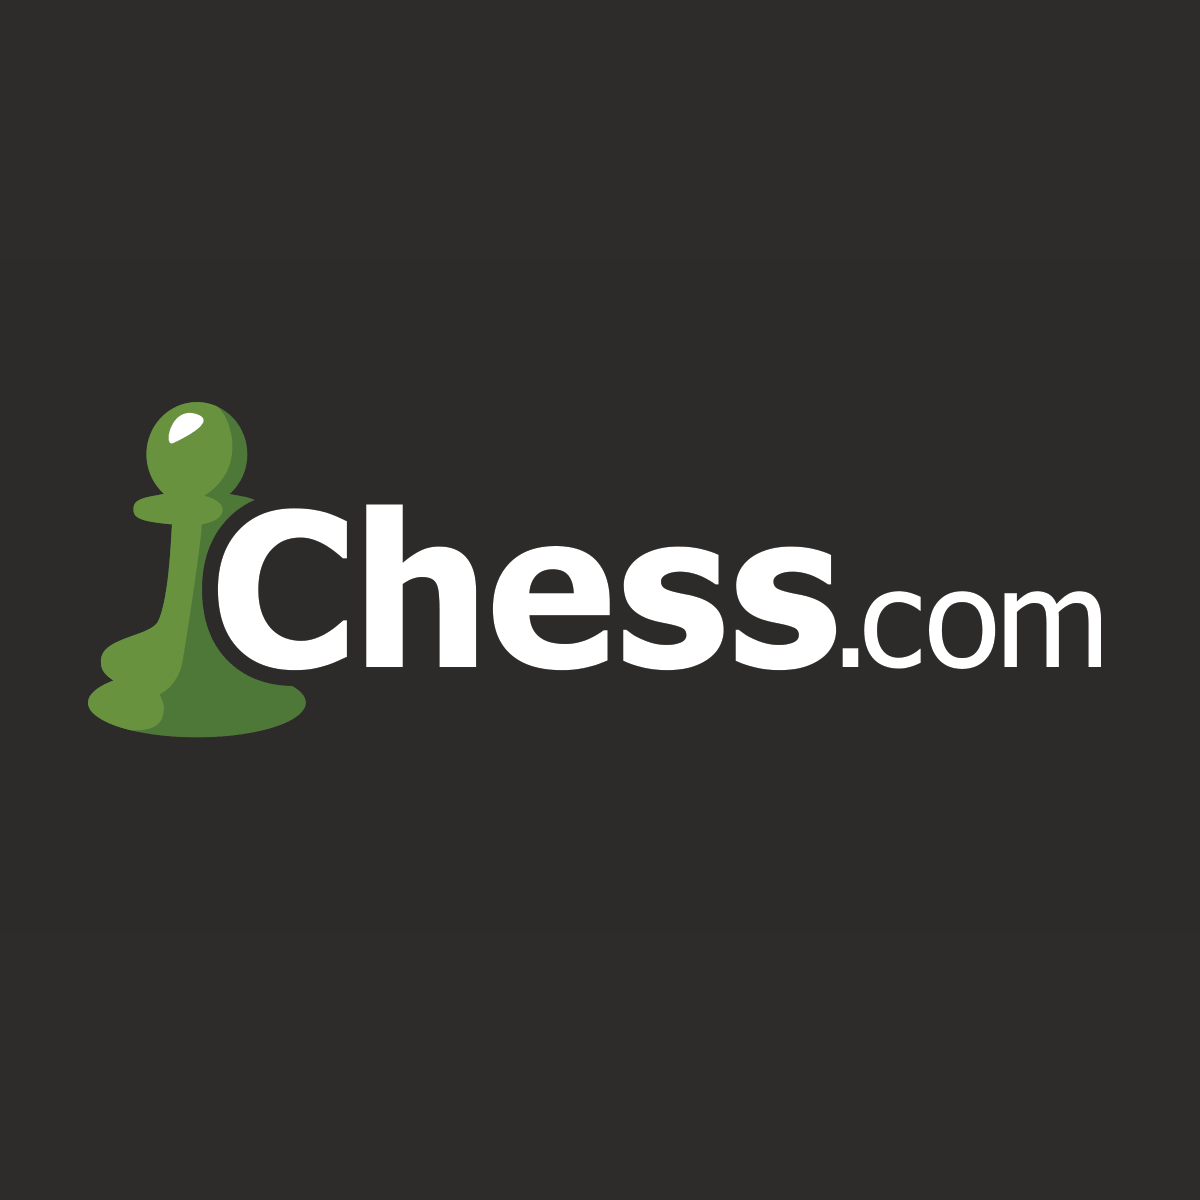 Www select com. Chess.com. Шахматы .com. Значок Chess.com.